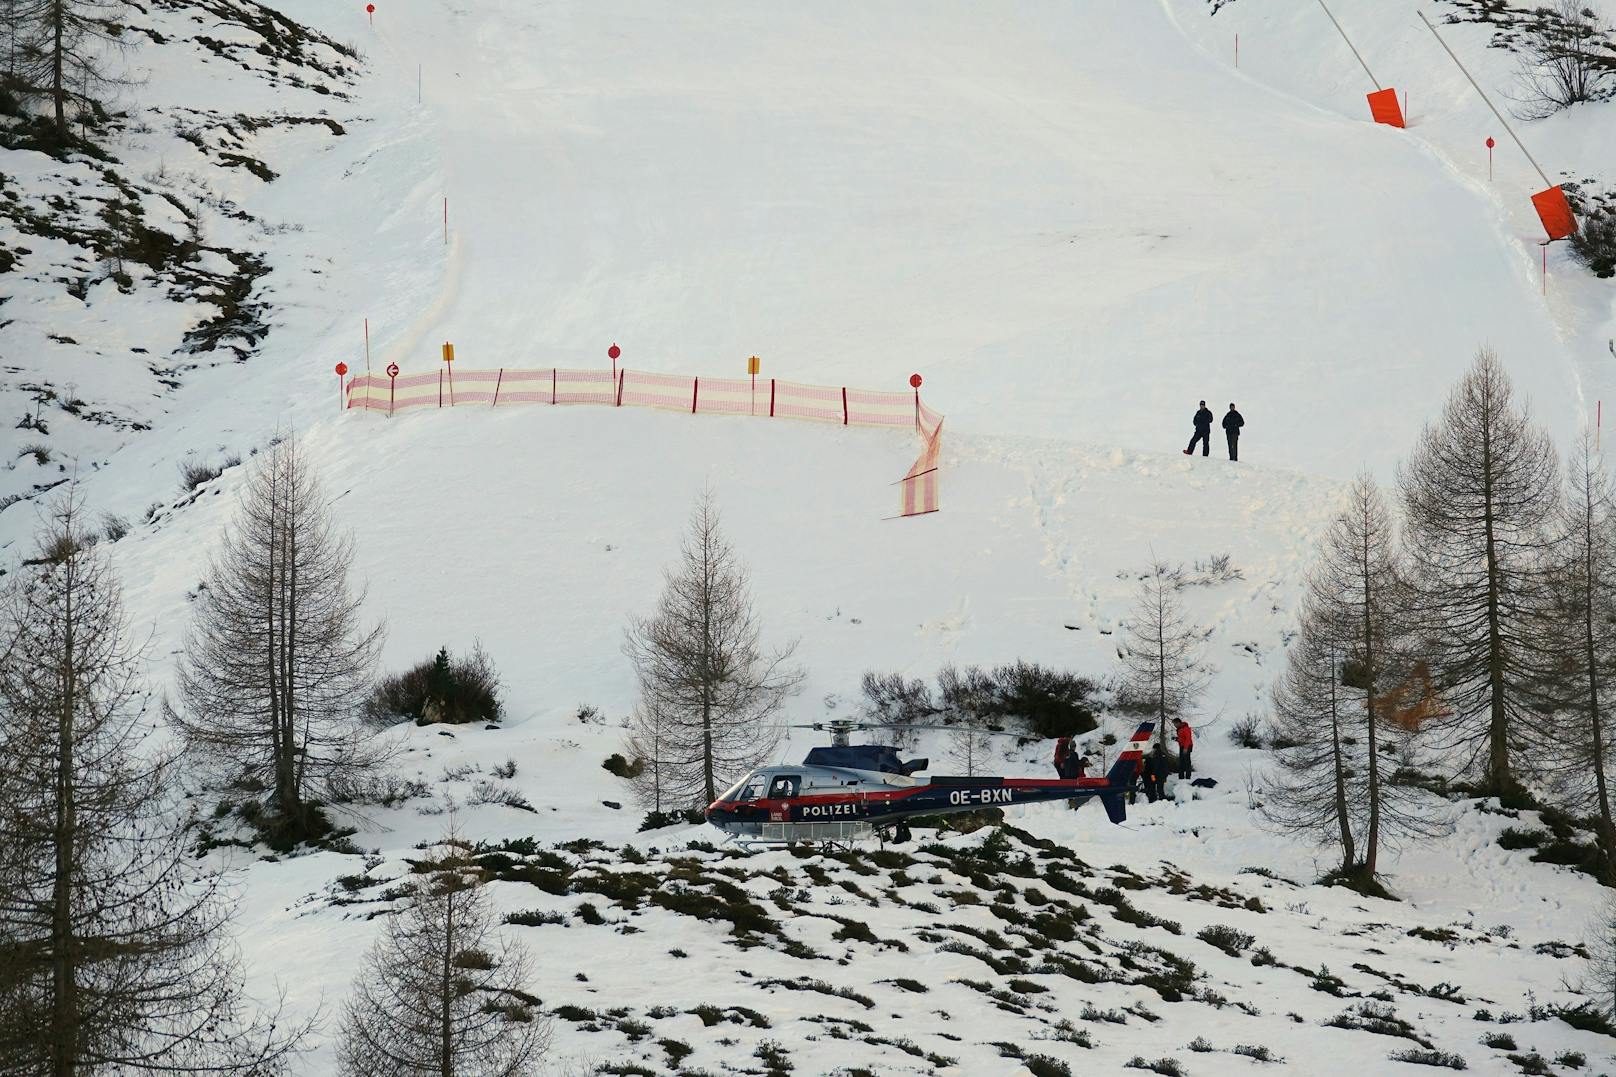 Am Hintertuxer Gletscher ereignete sich ein tödlicher Ski-Unfall.